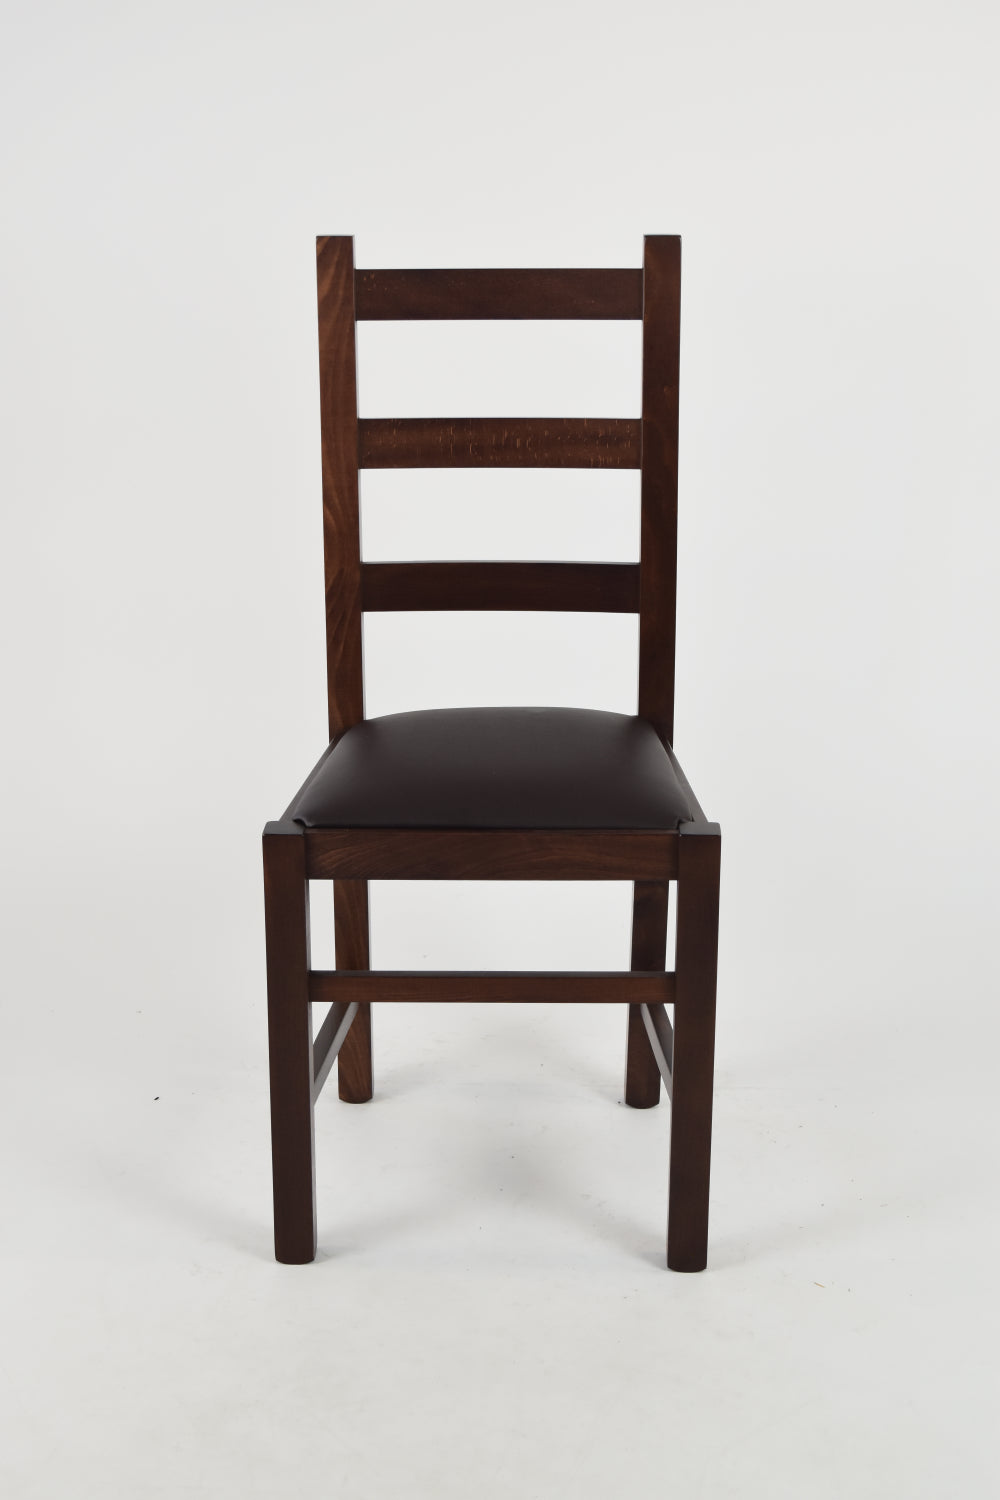 Tommychairs - Set 4 sillas de Cocina y Comedor  Rustica, Estructura en Madera de Haya Color Nogal Oscuro y Asiento tapizado en Polipiel Color Moka